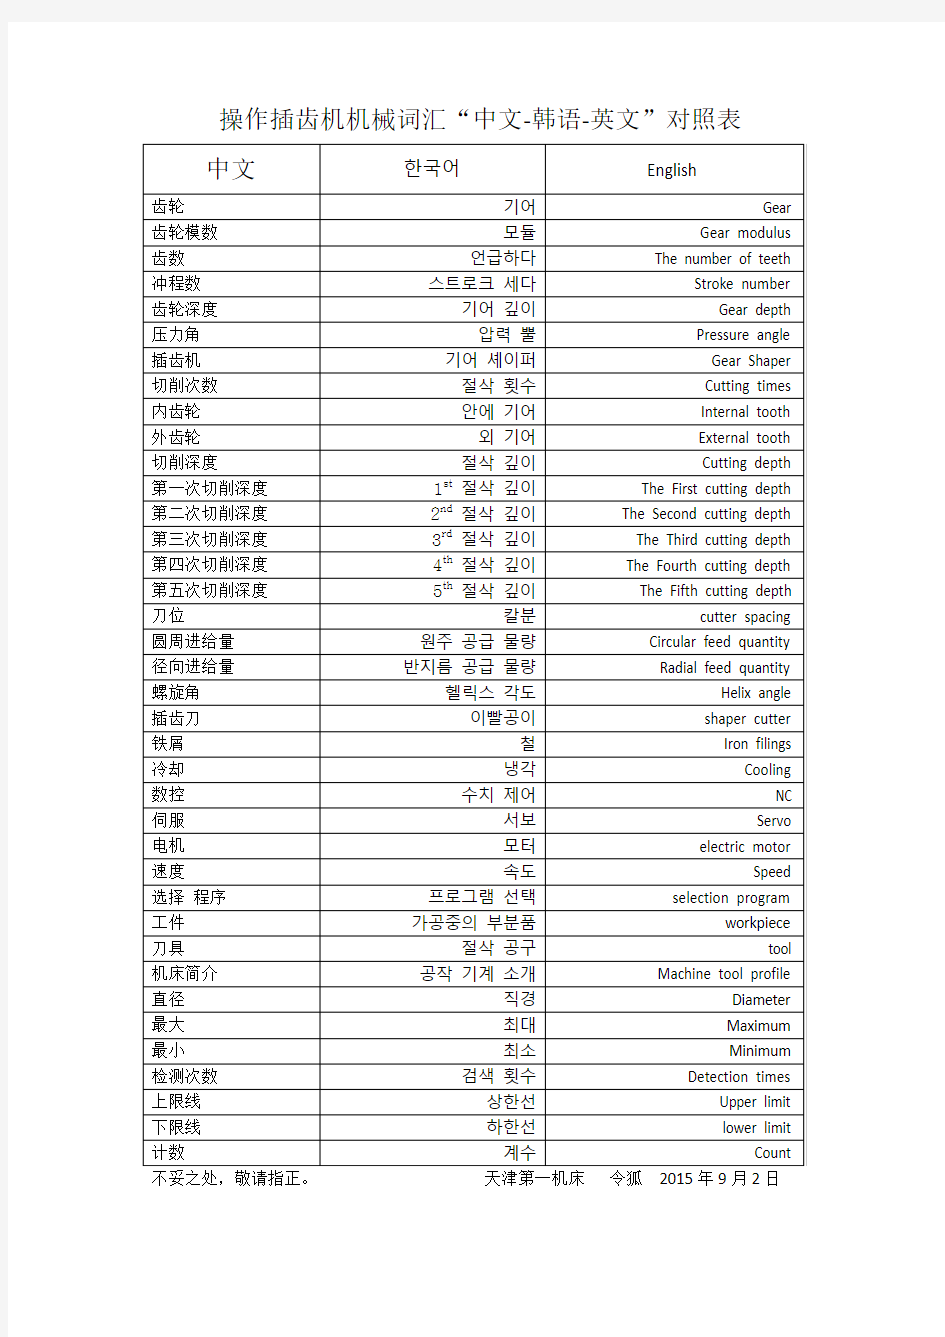 操作插齿机机械词汇“中文-韩语-英文”对照表